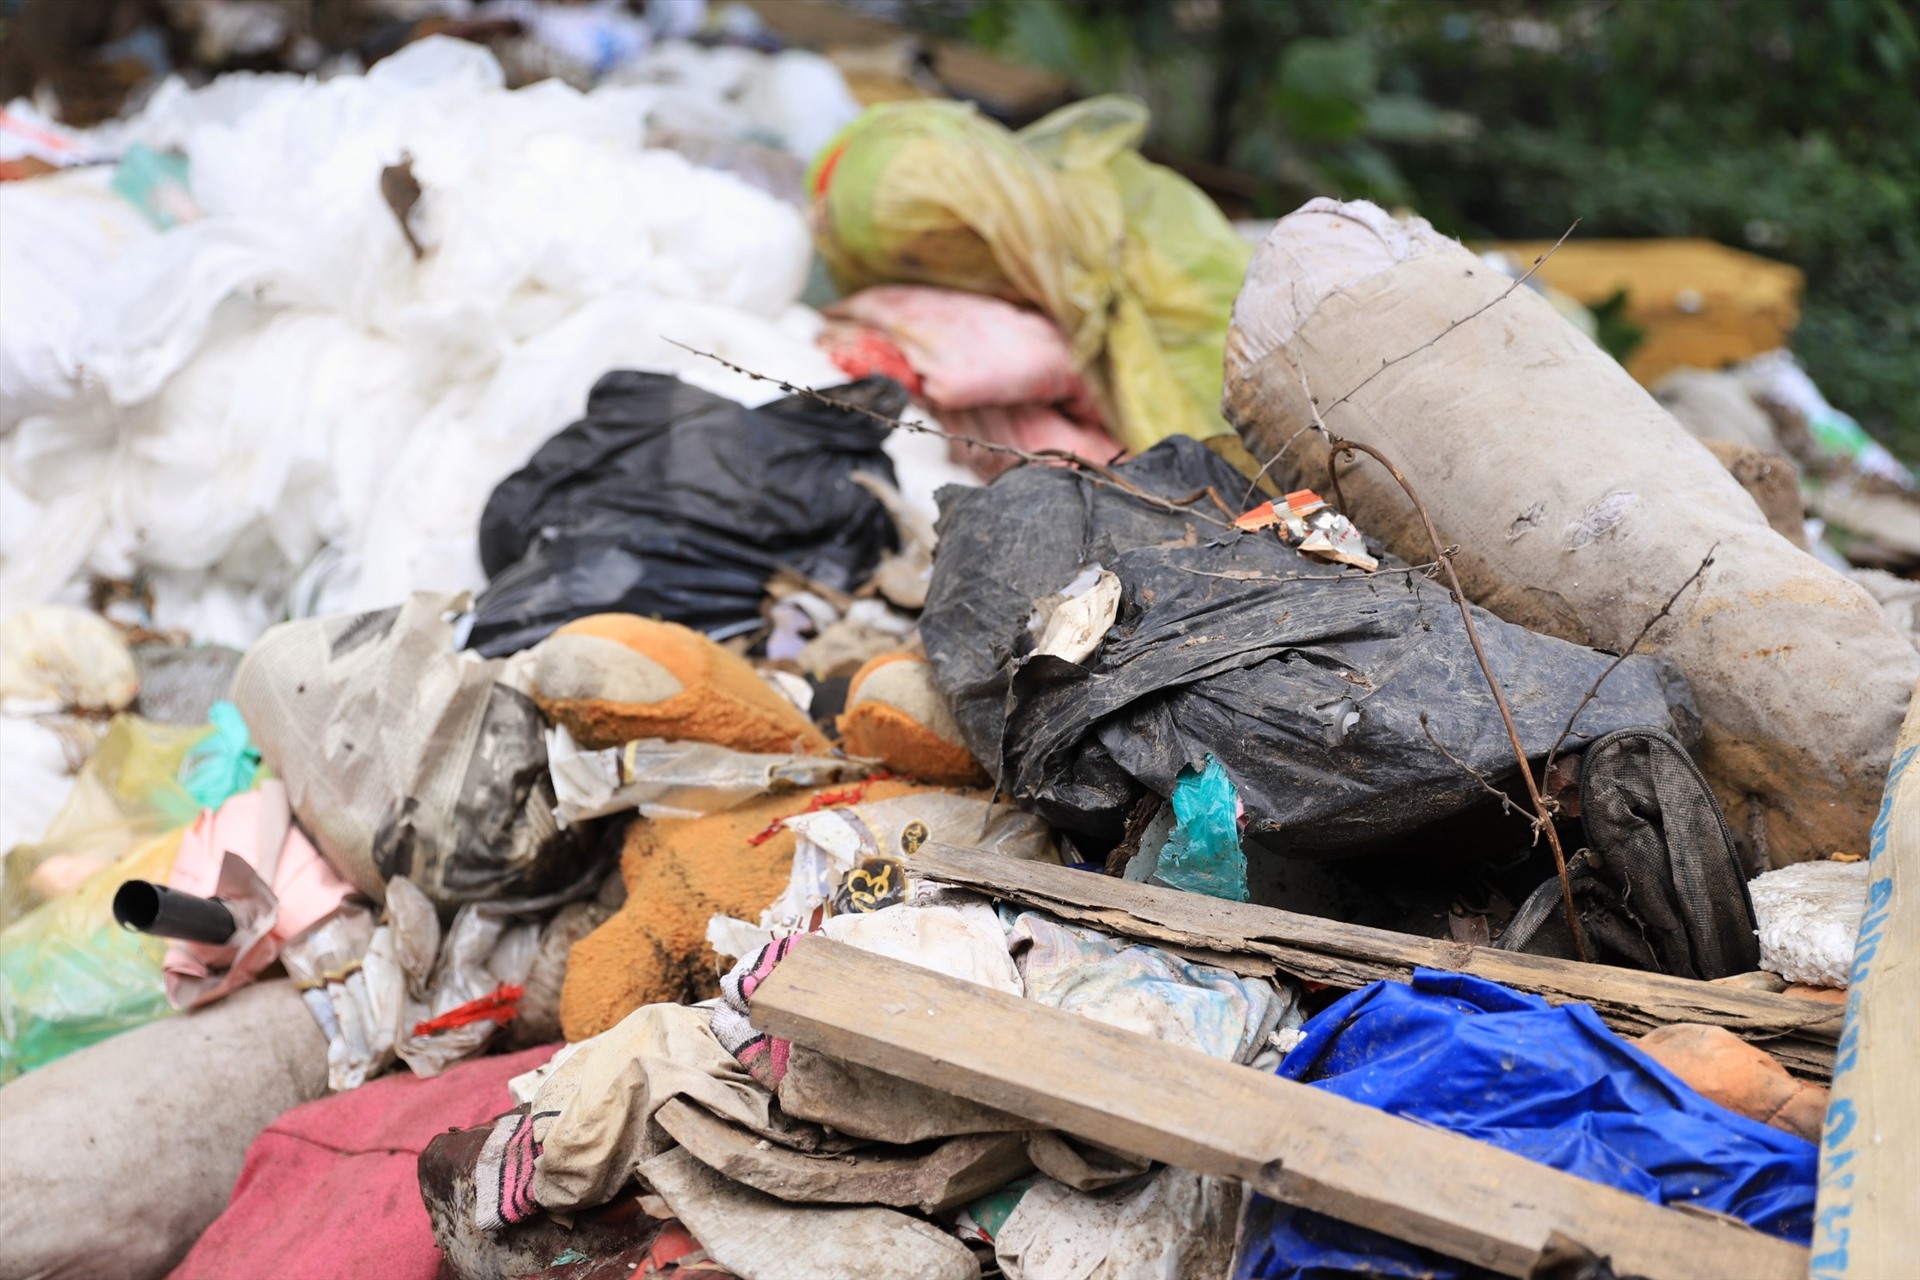 Những “núi” rác thải đủ các loại chất đầy khiến dòng sông bị xoá sổ. Do ảnh hưởng của bãi rác khổng lồ, người dân sống xung quanh khu vực luôn phải chịu đựng mùi hôi thối, ô nhiễm nghiêm trọng.